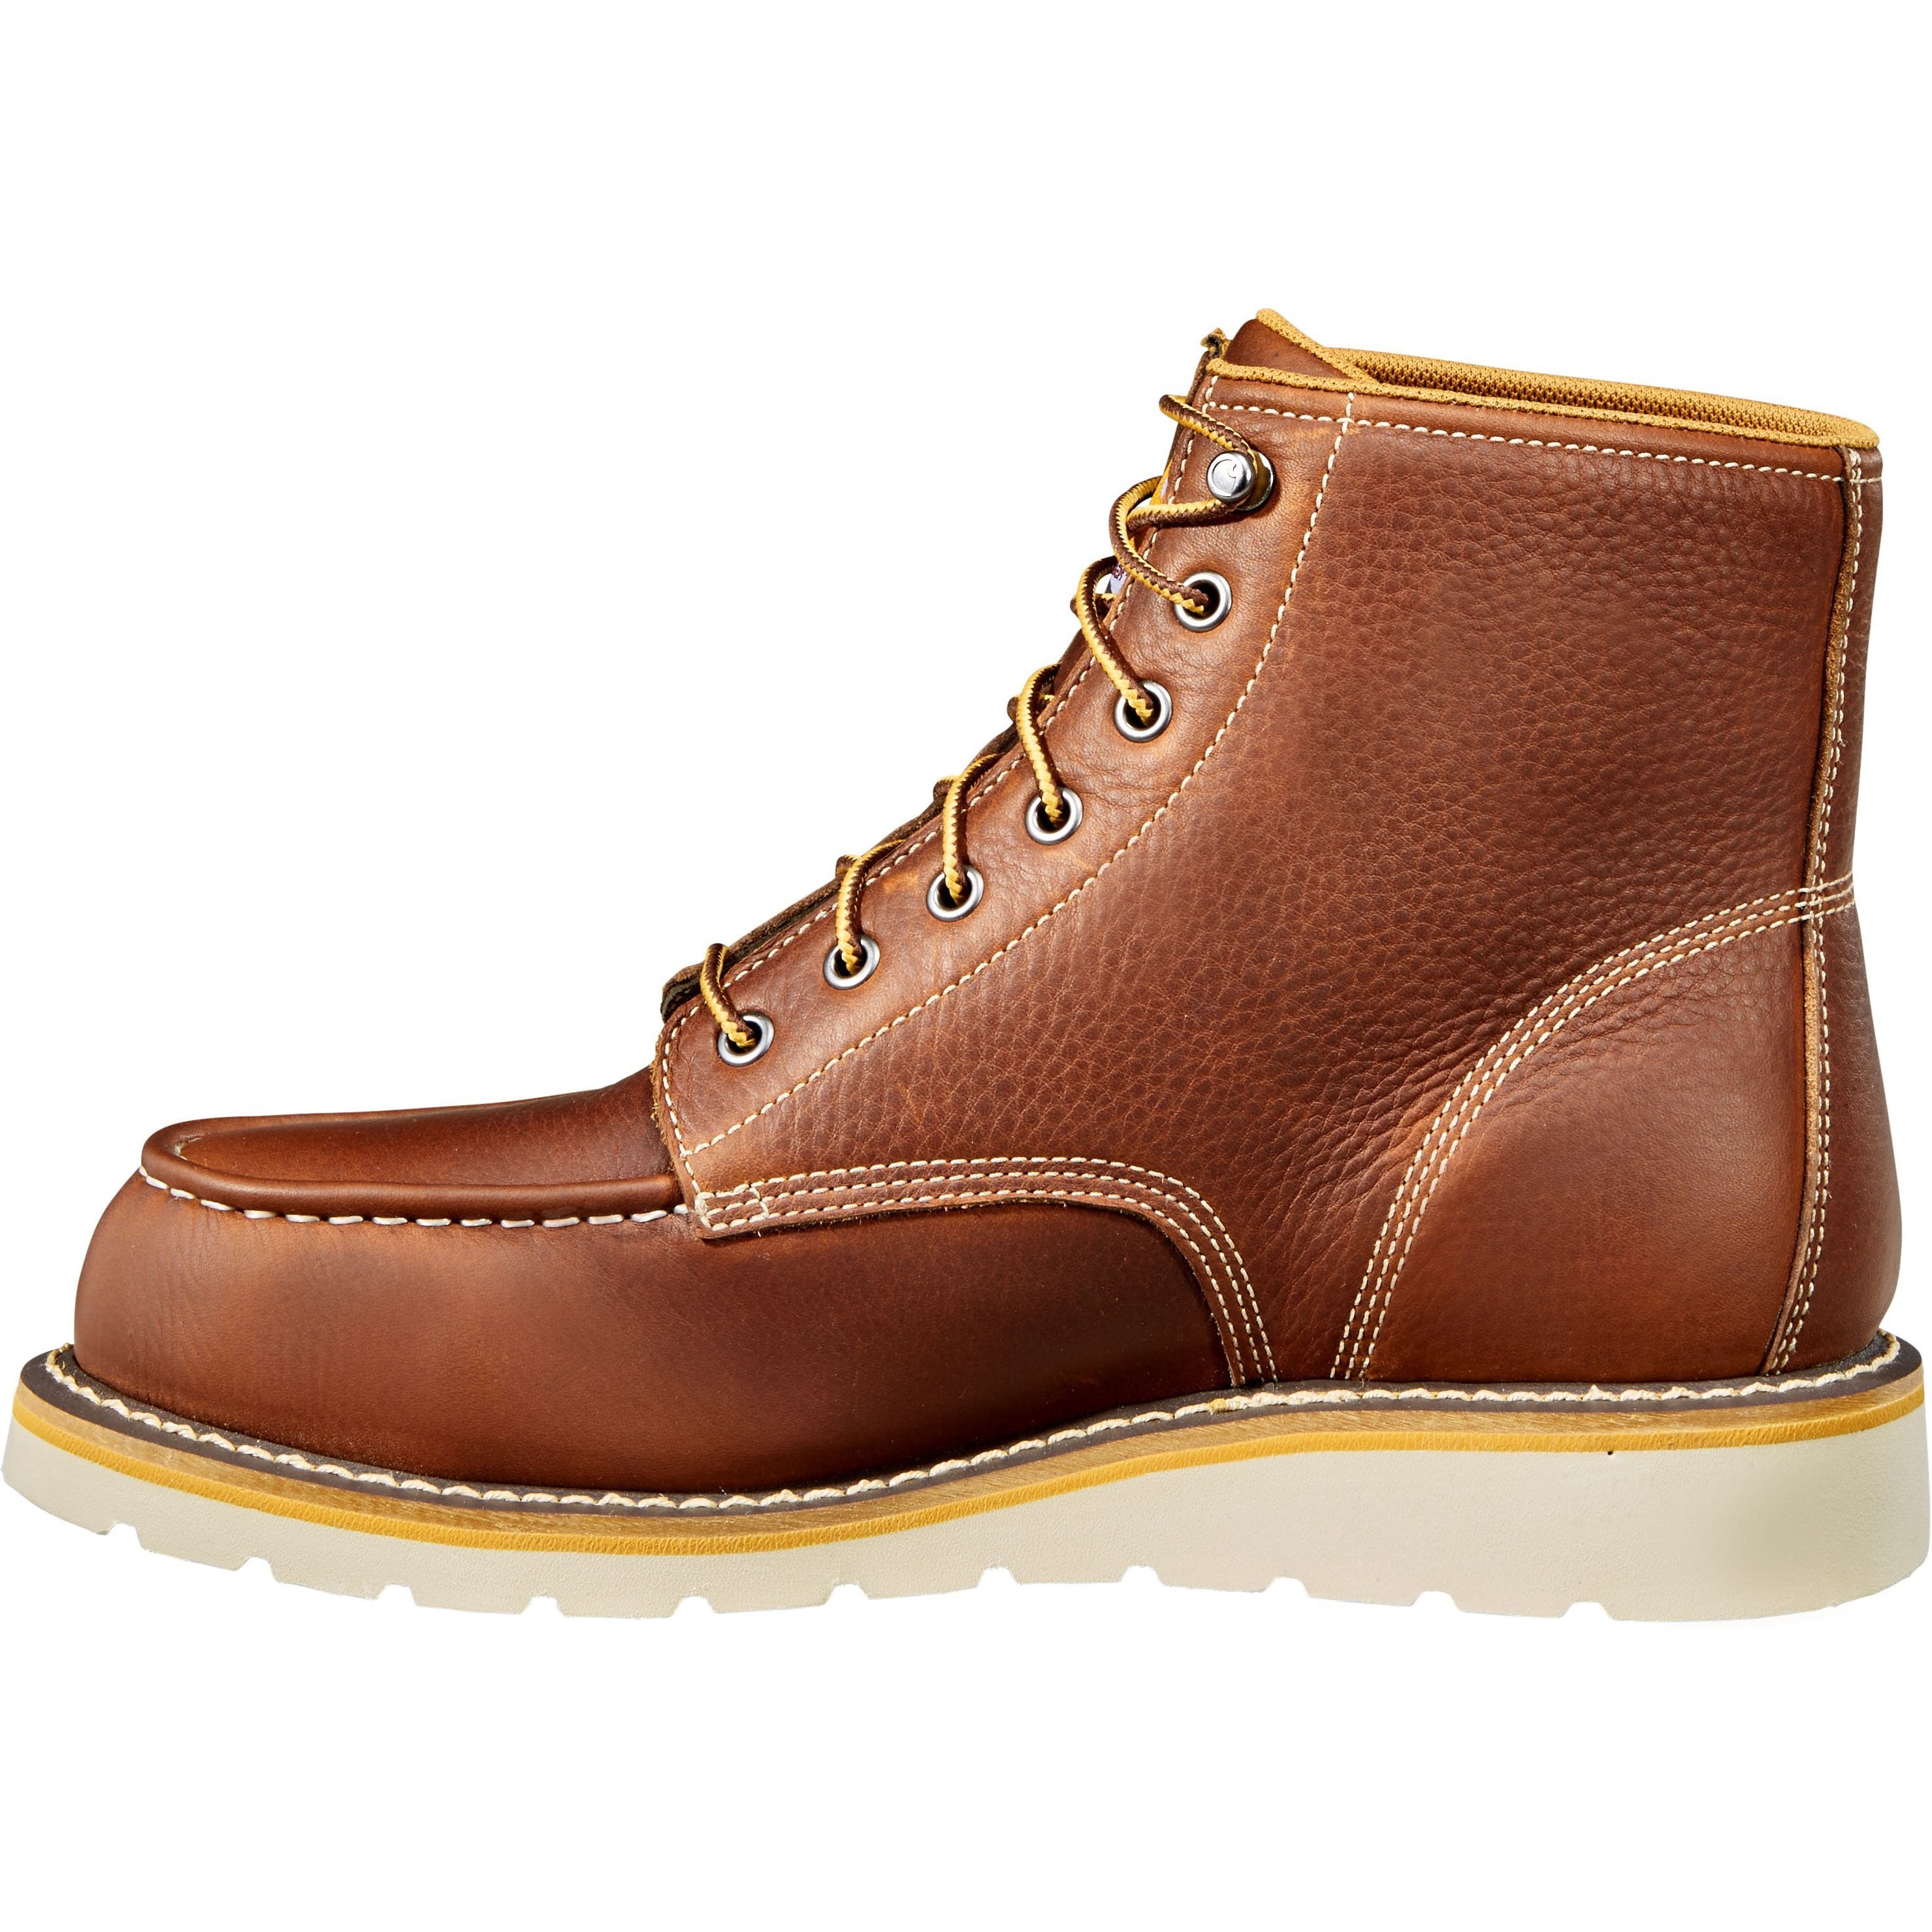 Carhartt Men's 6" Soft Toe Waterproof Wedge Work Boot - Tan - CMW6175  - Overlook Boots